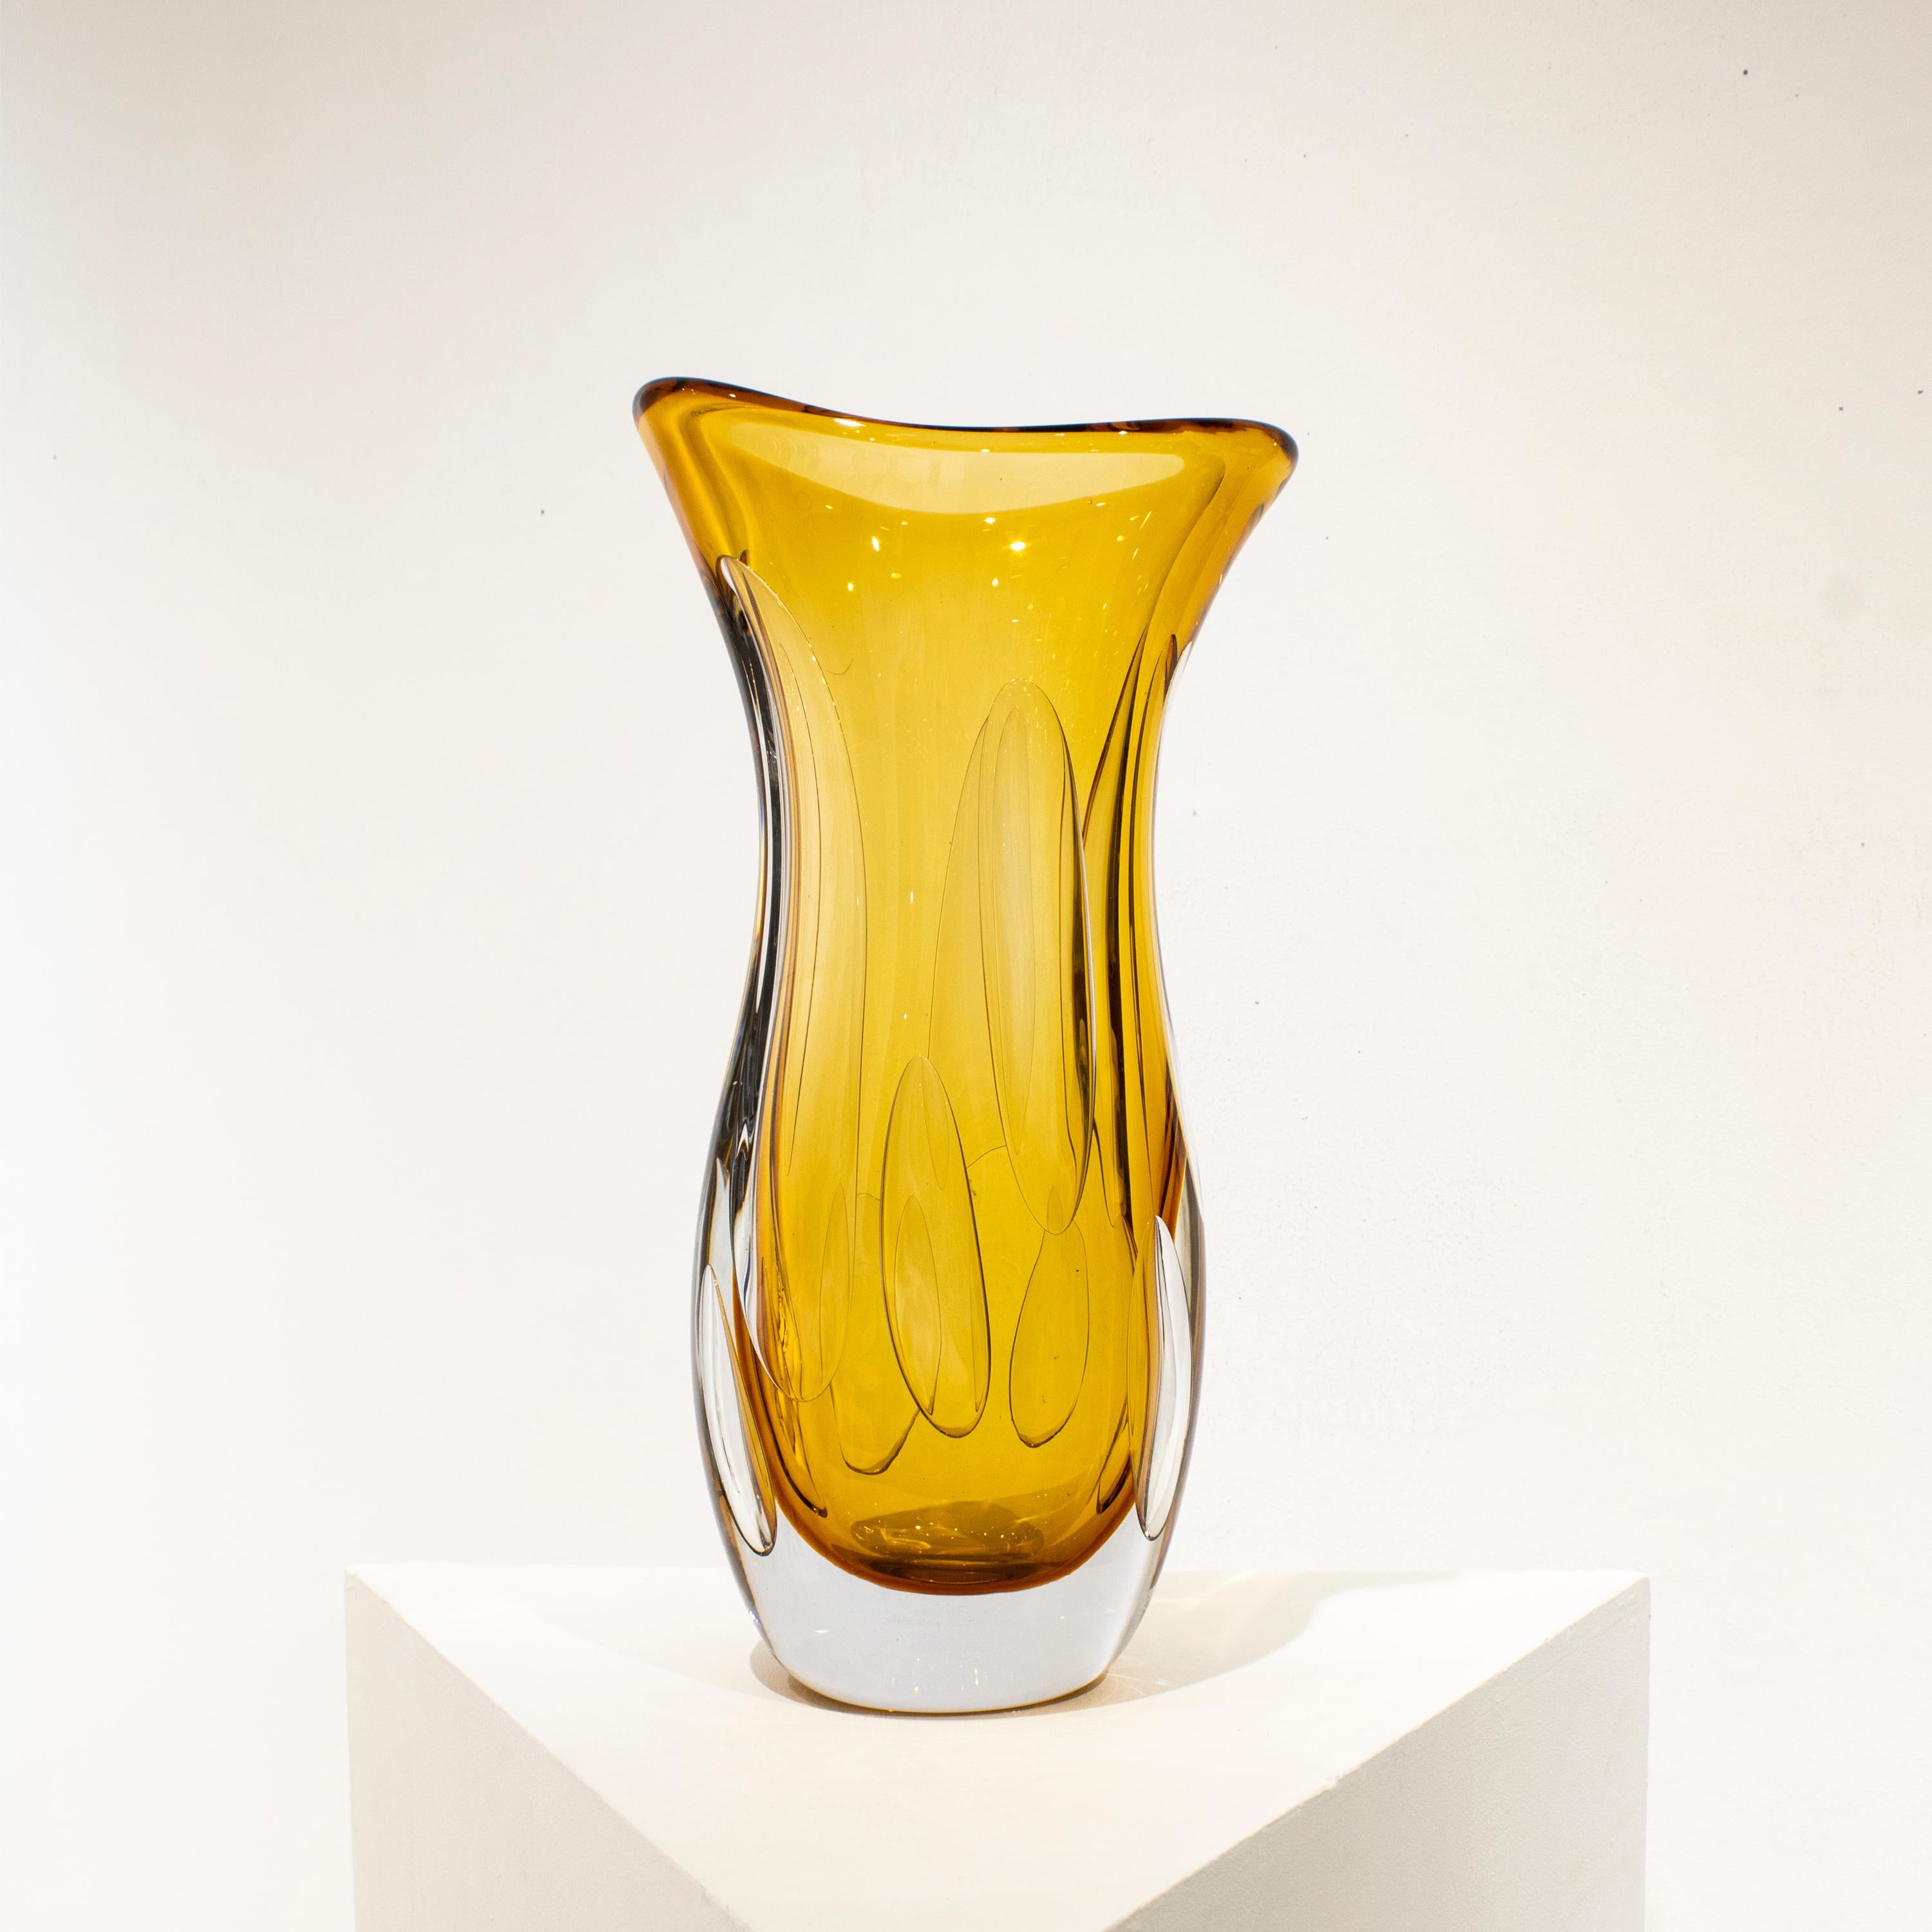 Vase en verre semi-transparent jaune italien soufflé à la main, avec des formes organiques et des bulles à l'intérieur.